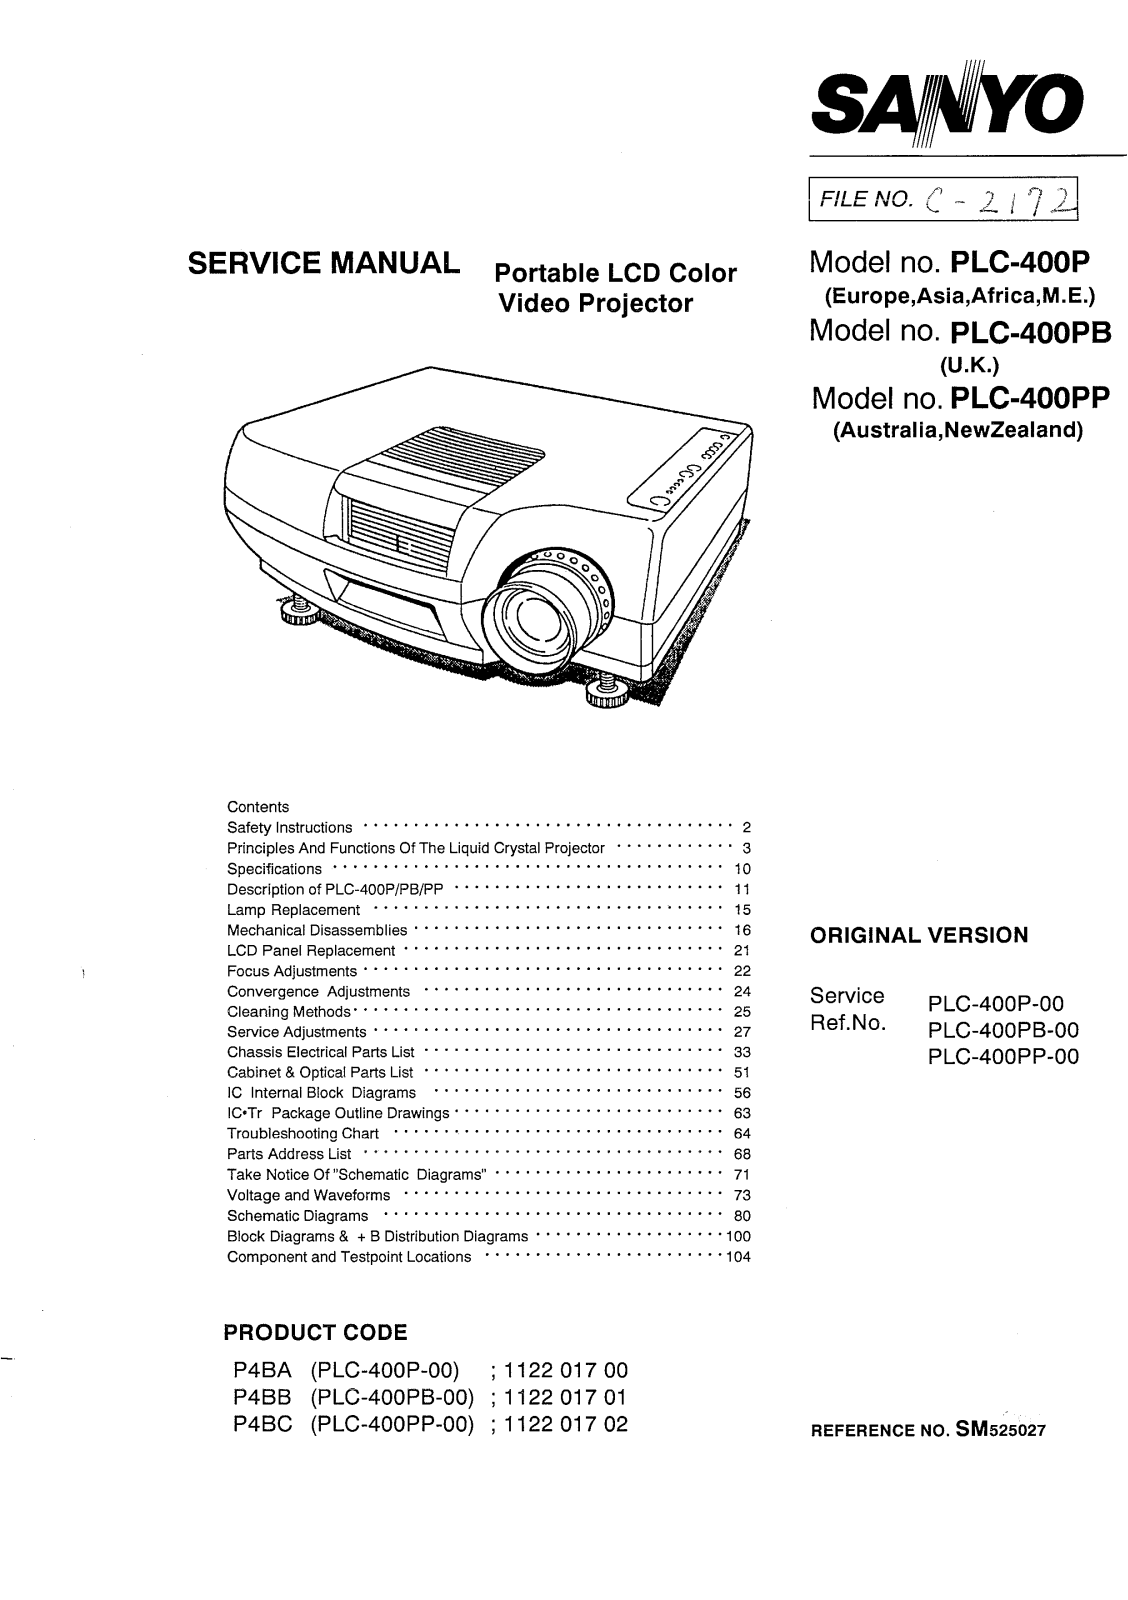 Sanyo PLC-400PP, PLC-400PB, PLC-400P Service Manual